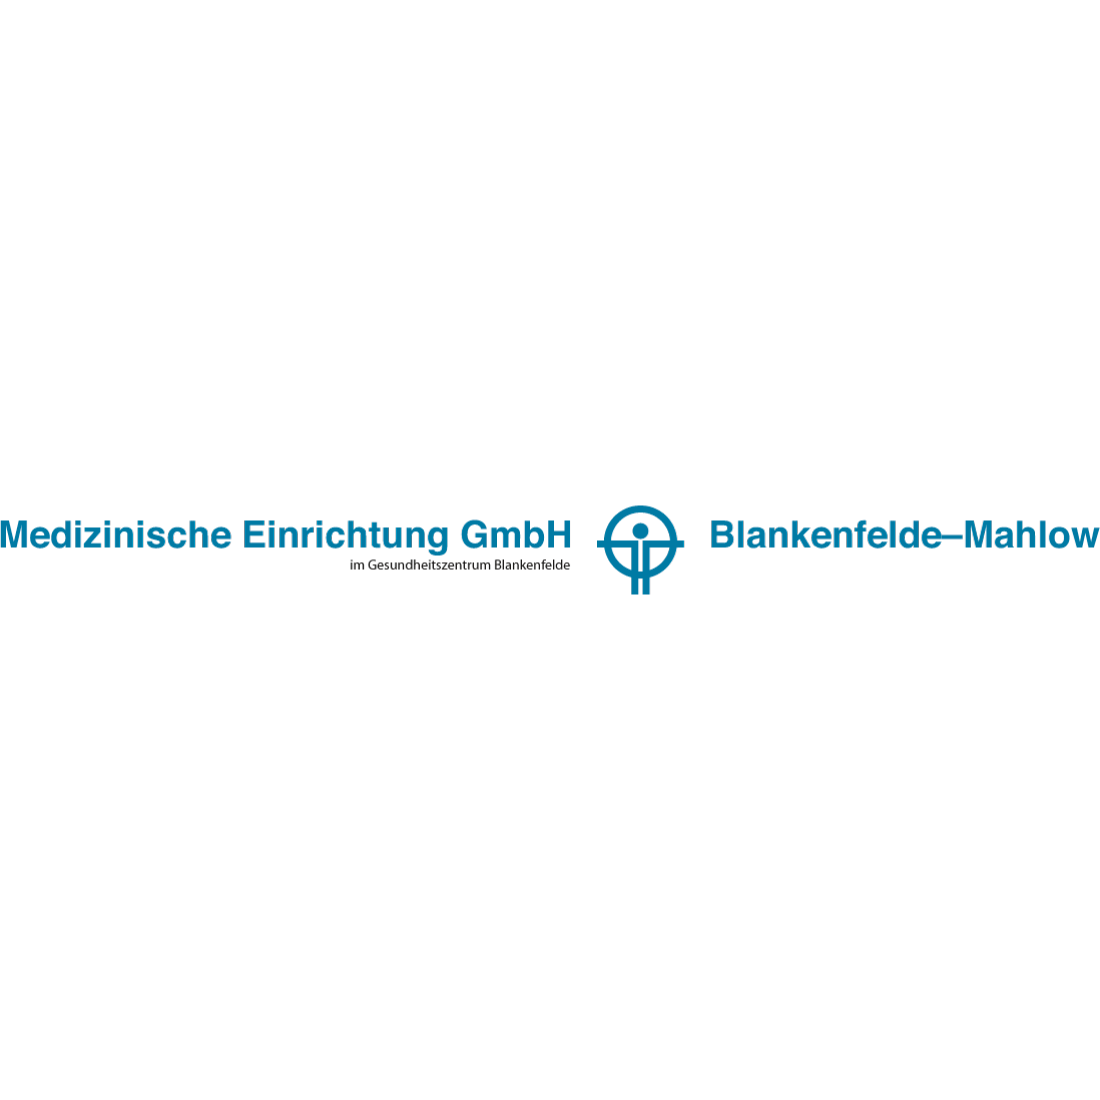 Medizinische Einrichtung GmbH Blankenfelde (MEG) in Blankenfelde Mahlow - Logo